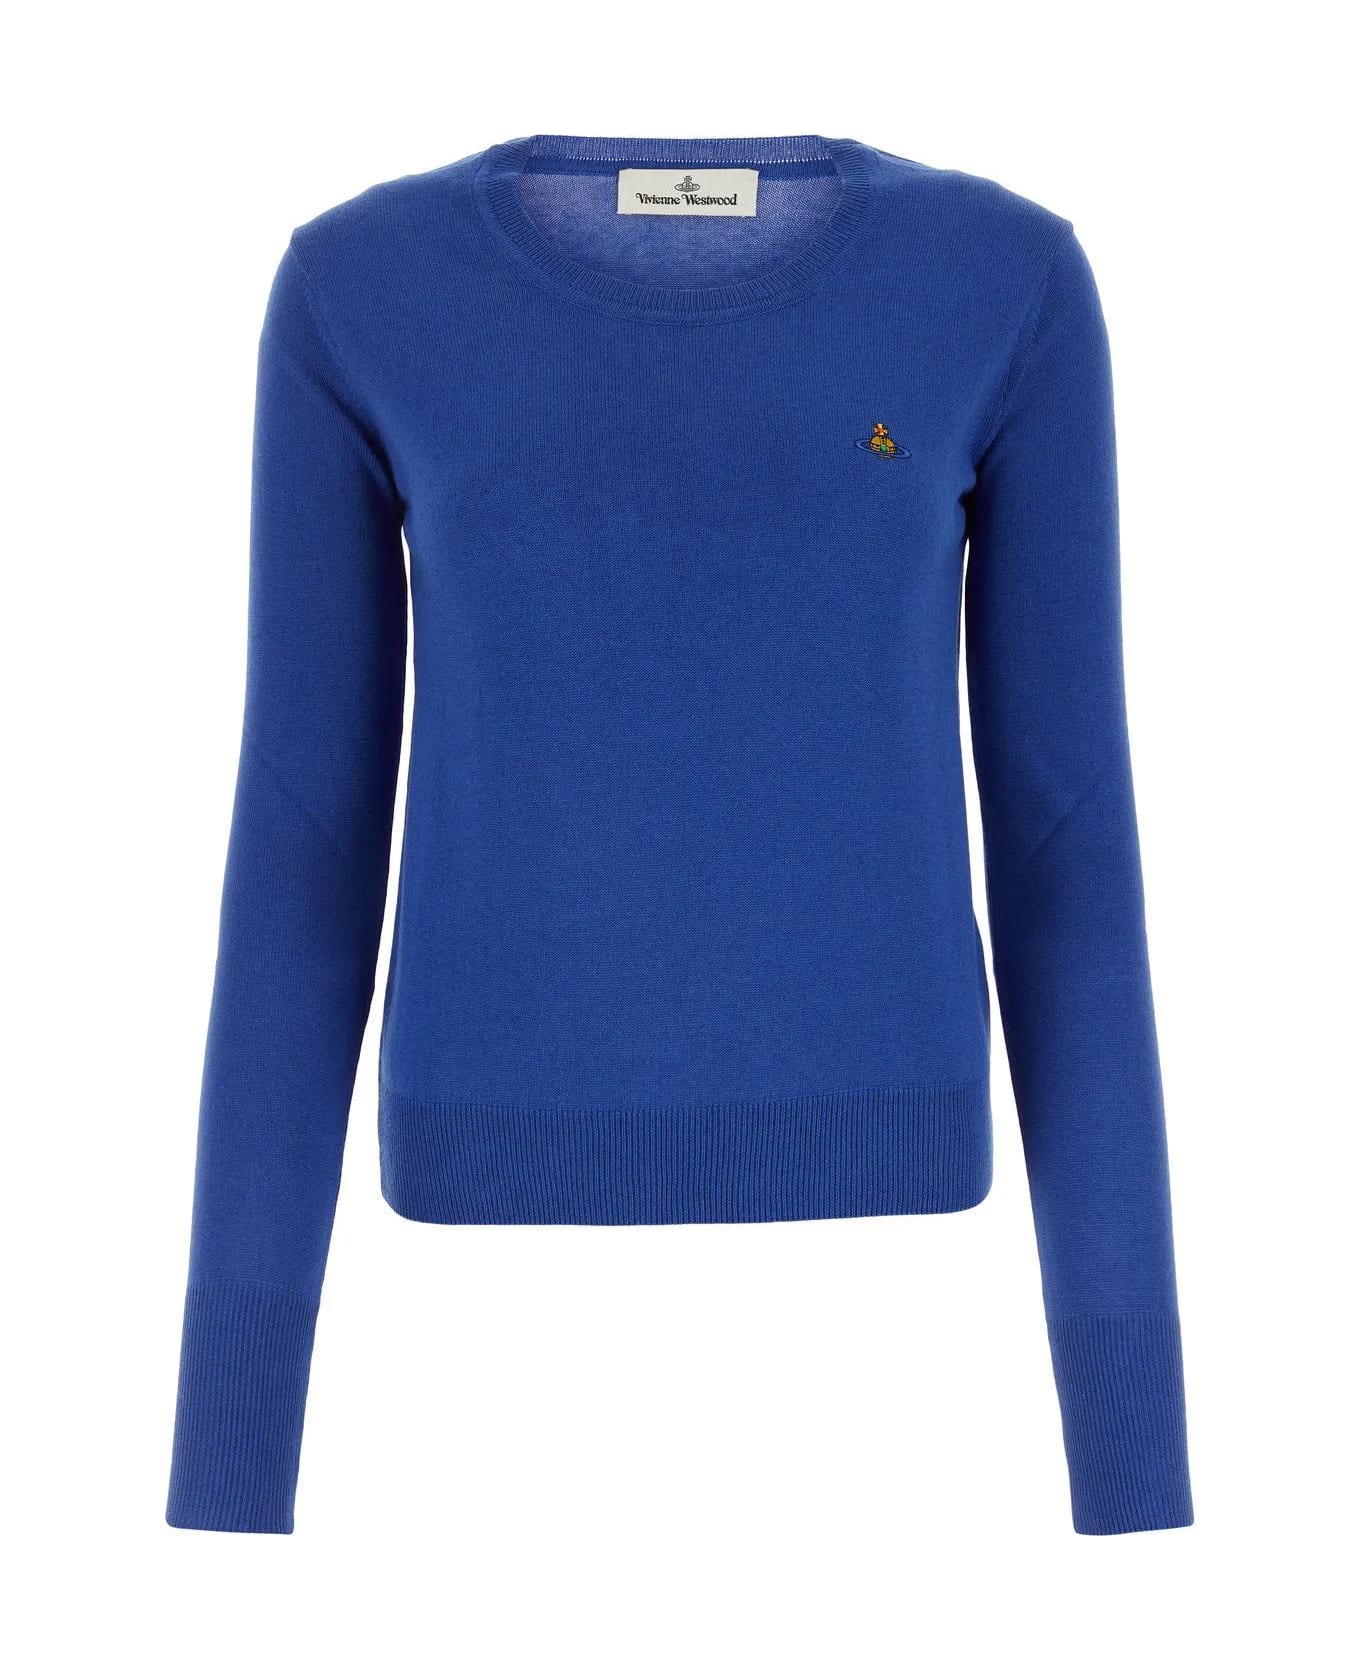 Vivienne Westwood Electric Blue Cotton Blend Bea Sweater - Blue